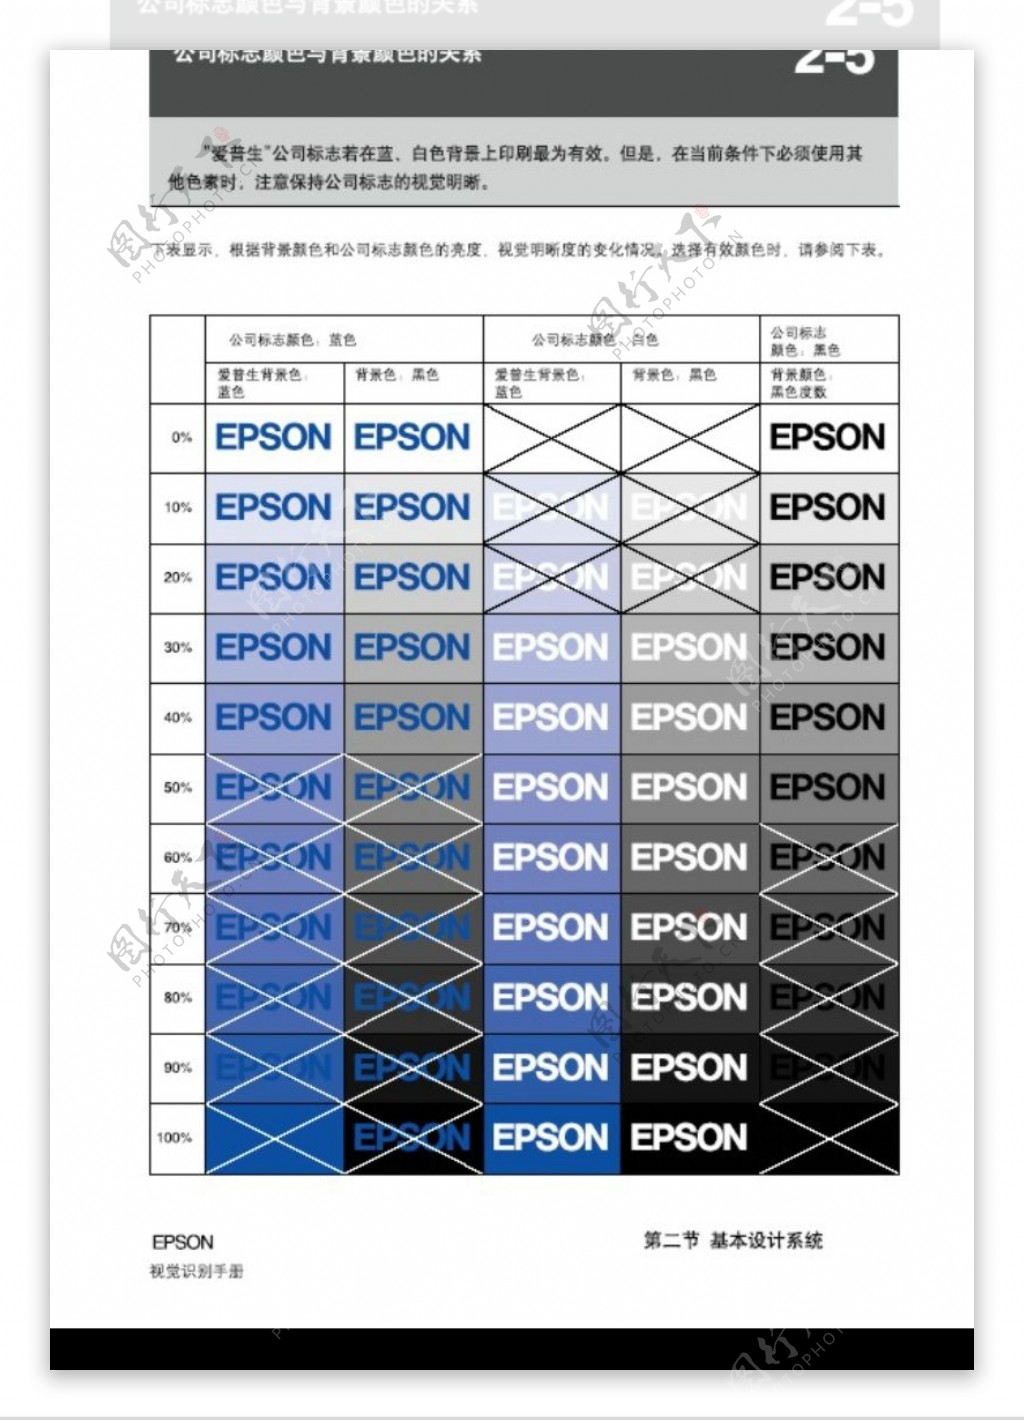 EPSON0014